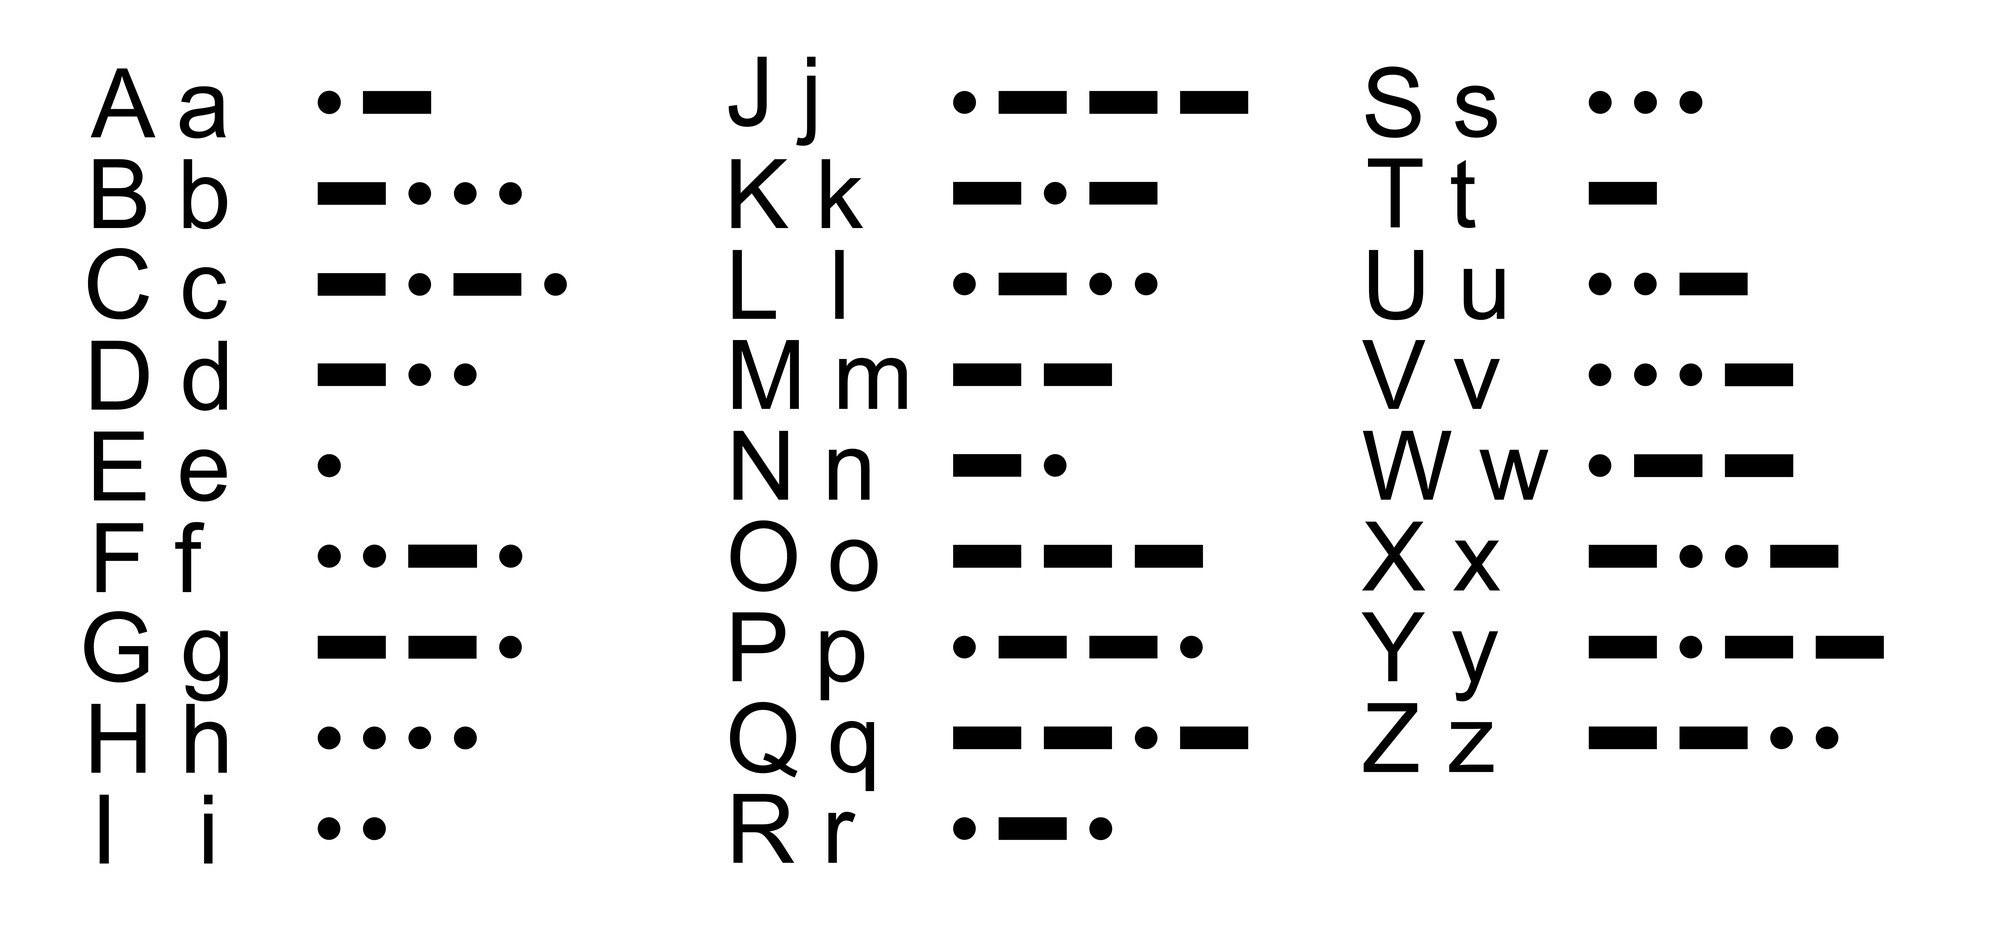 Printable Morse Code Key